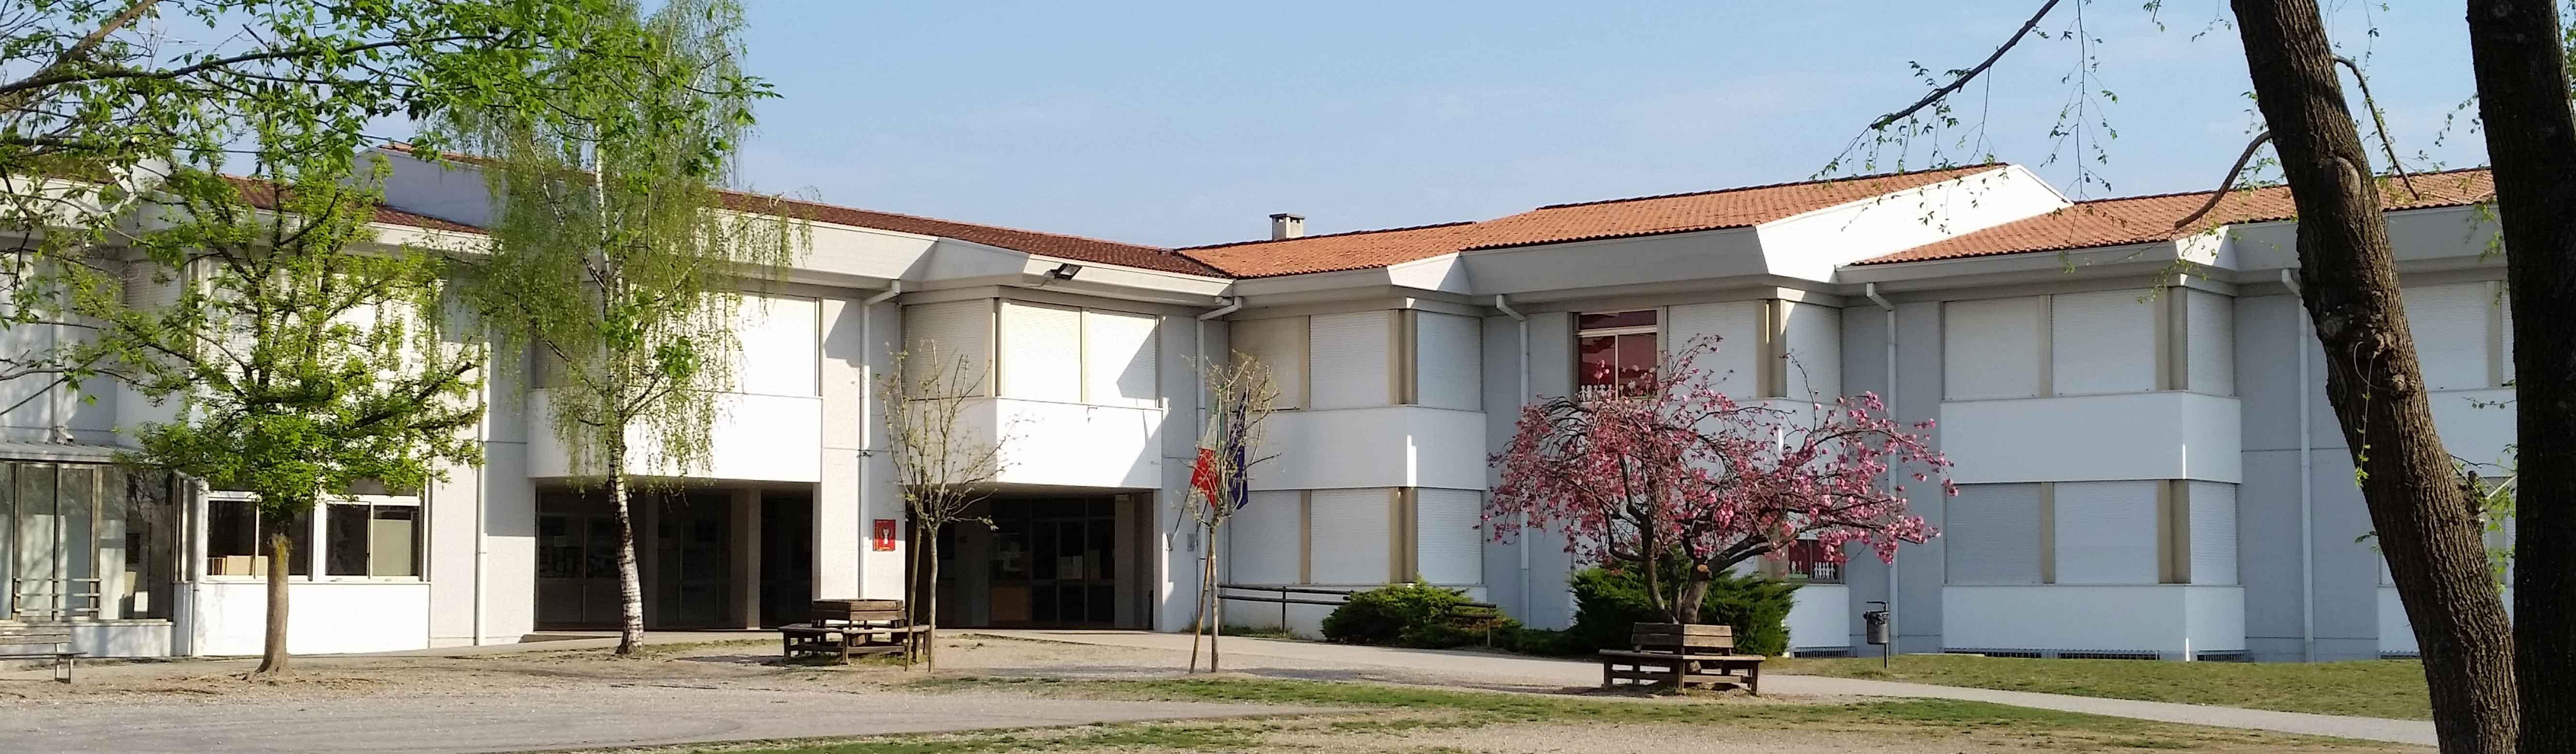 Primaria G. Marconi - Fontanafredda Centro